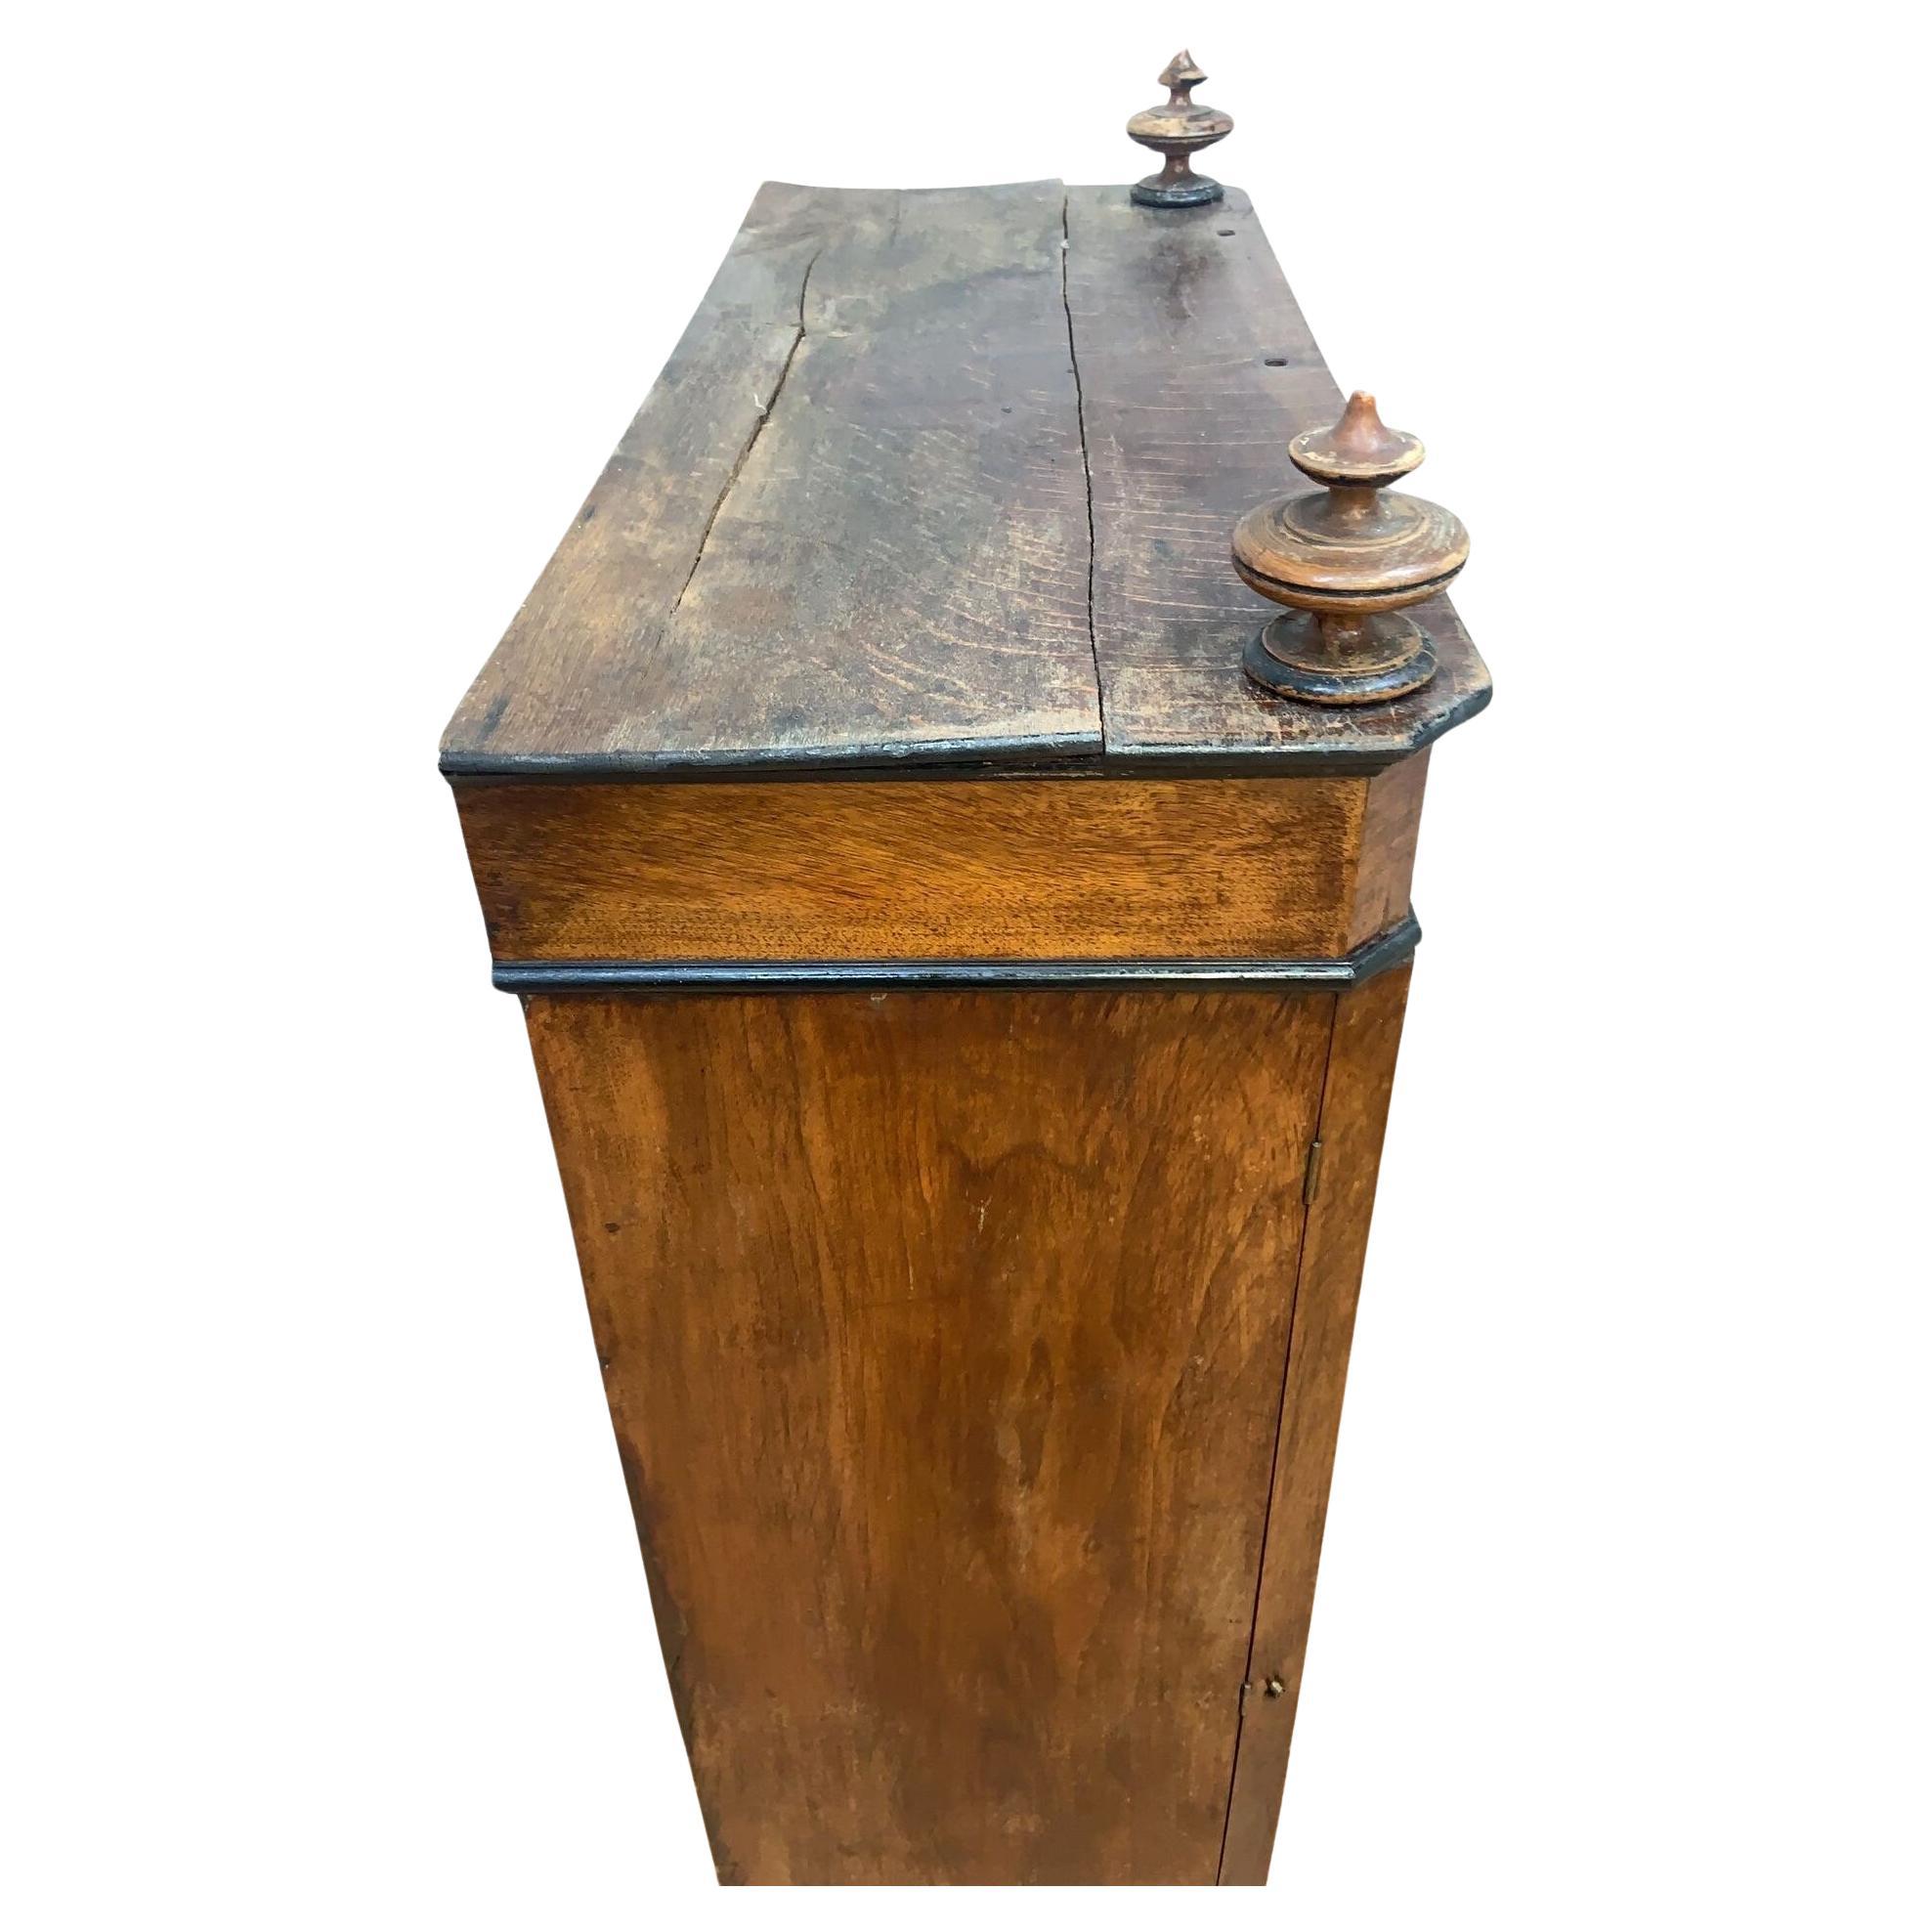 Antike Französisch Napoleon Locking-Side 13 Schubladen File Chest Cabinet

Unser außergewöhnlicher französischer Aktenschrank Napoleon Lock-Side verfügt über eine beeindruckende Anzahl von 13 Schubladen. Diese mit viel Liebe zum Detail gefertigte